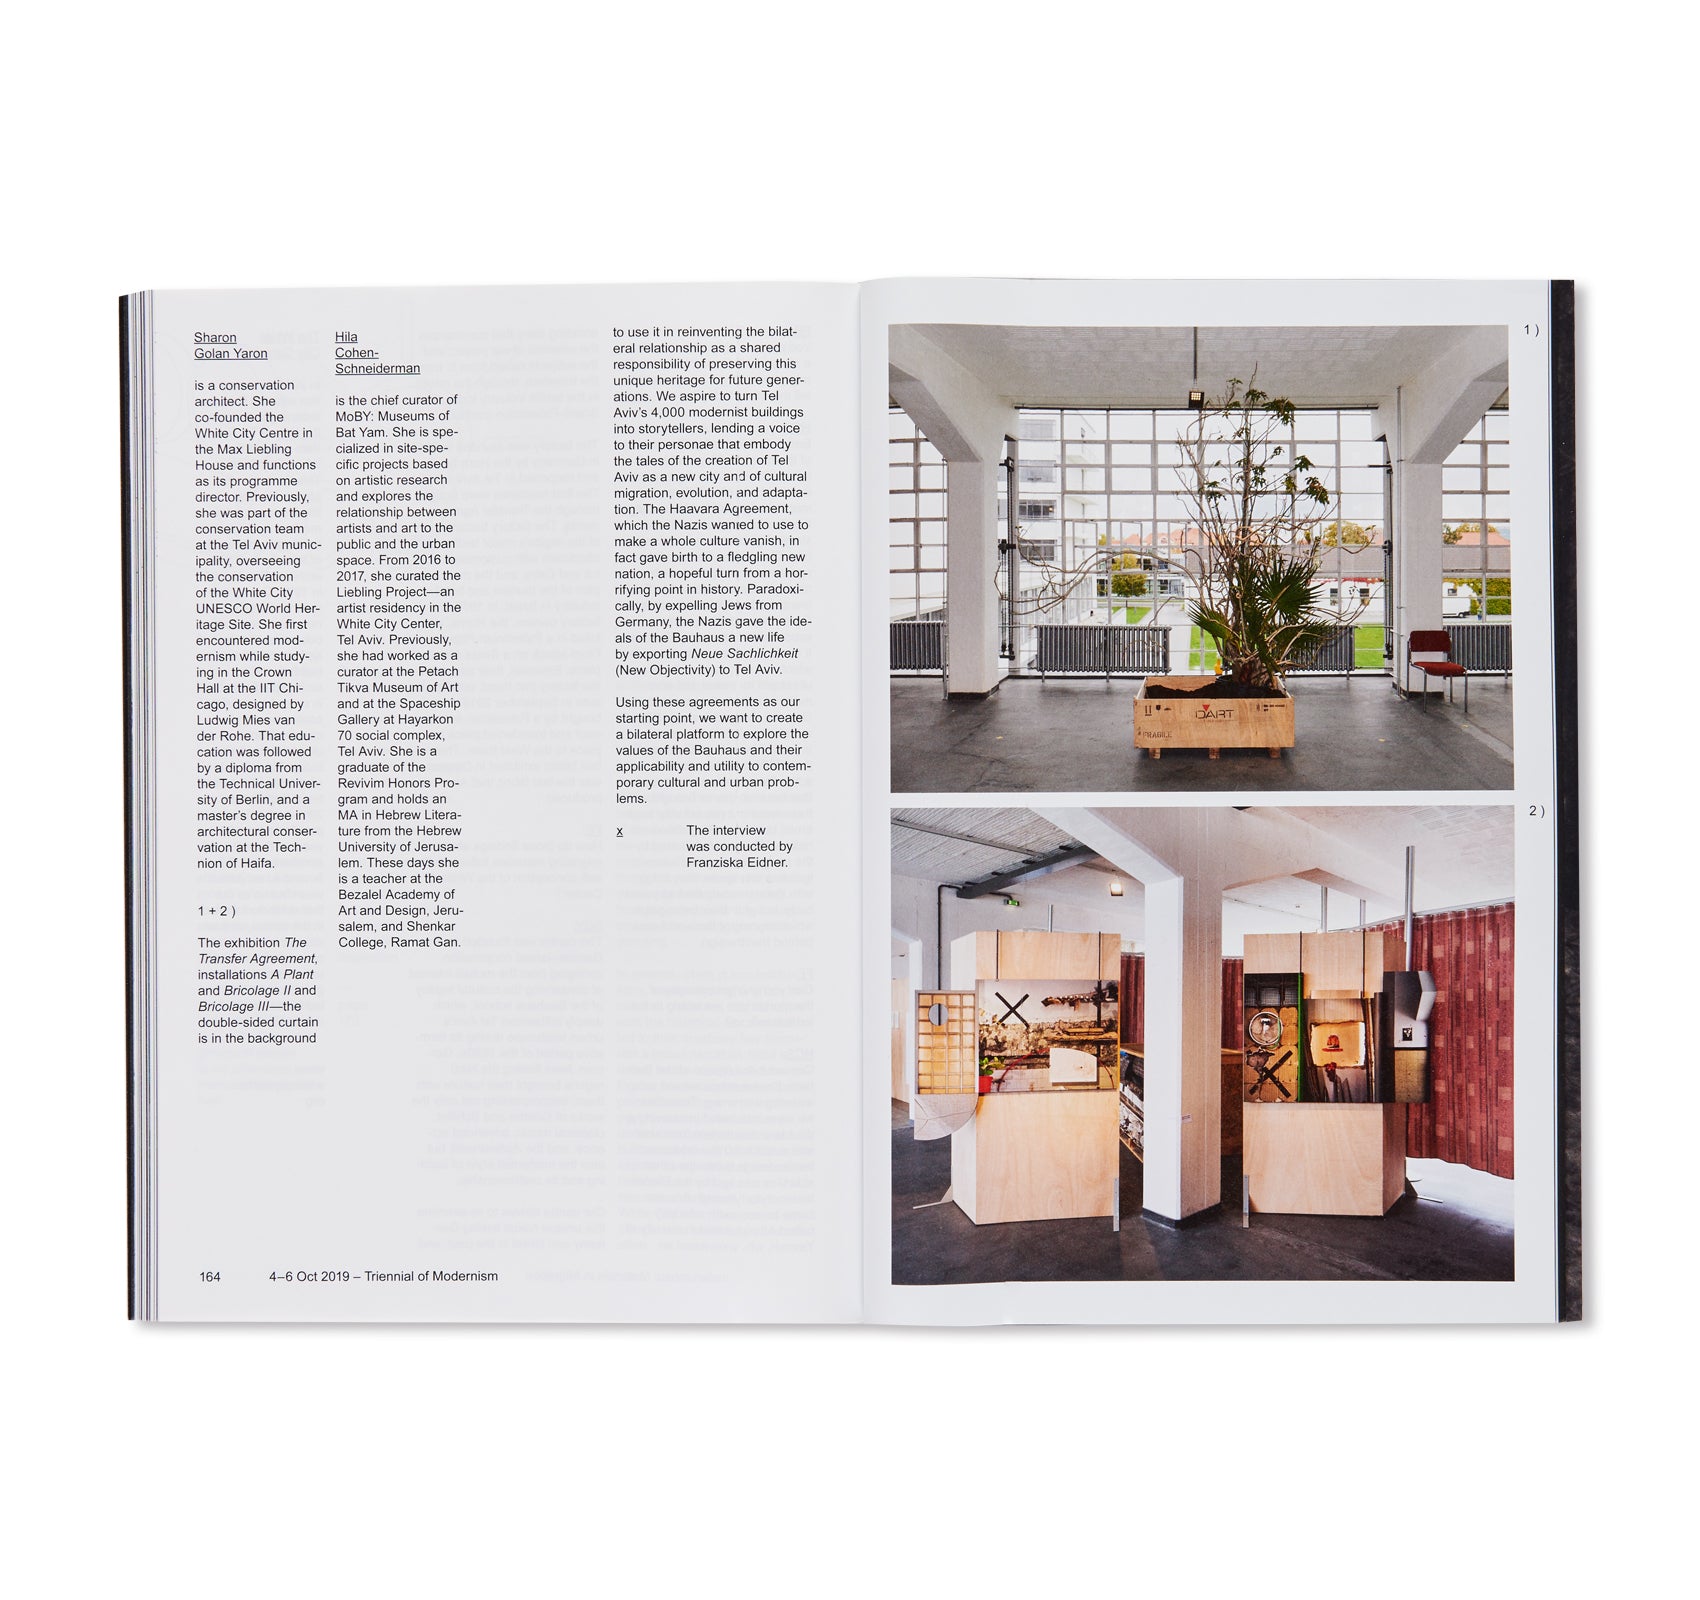 CENTENARY - BAUHAUS 11. The Bauhaus Dessau Foundation's Magazine by Stiftung Bauhaus Dessau